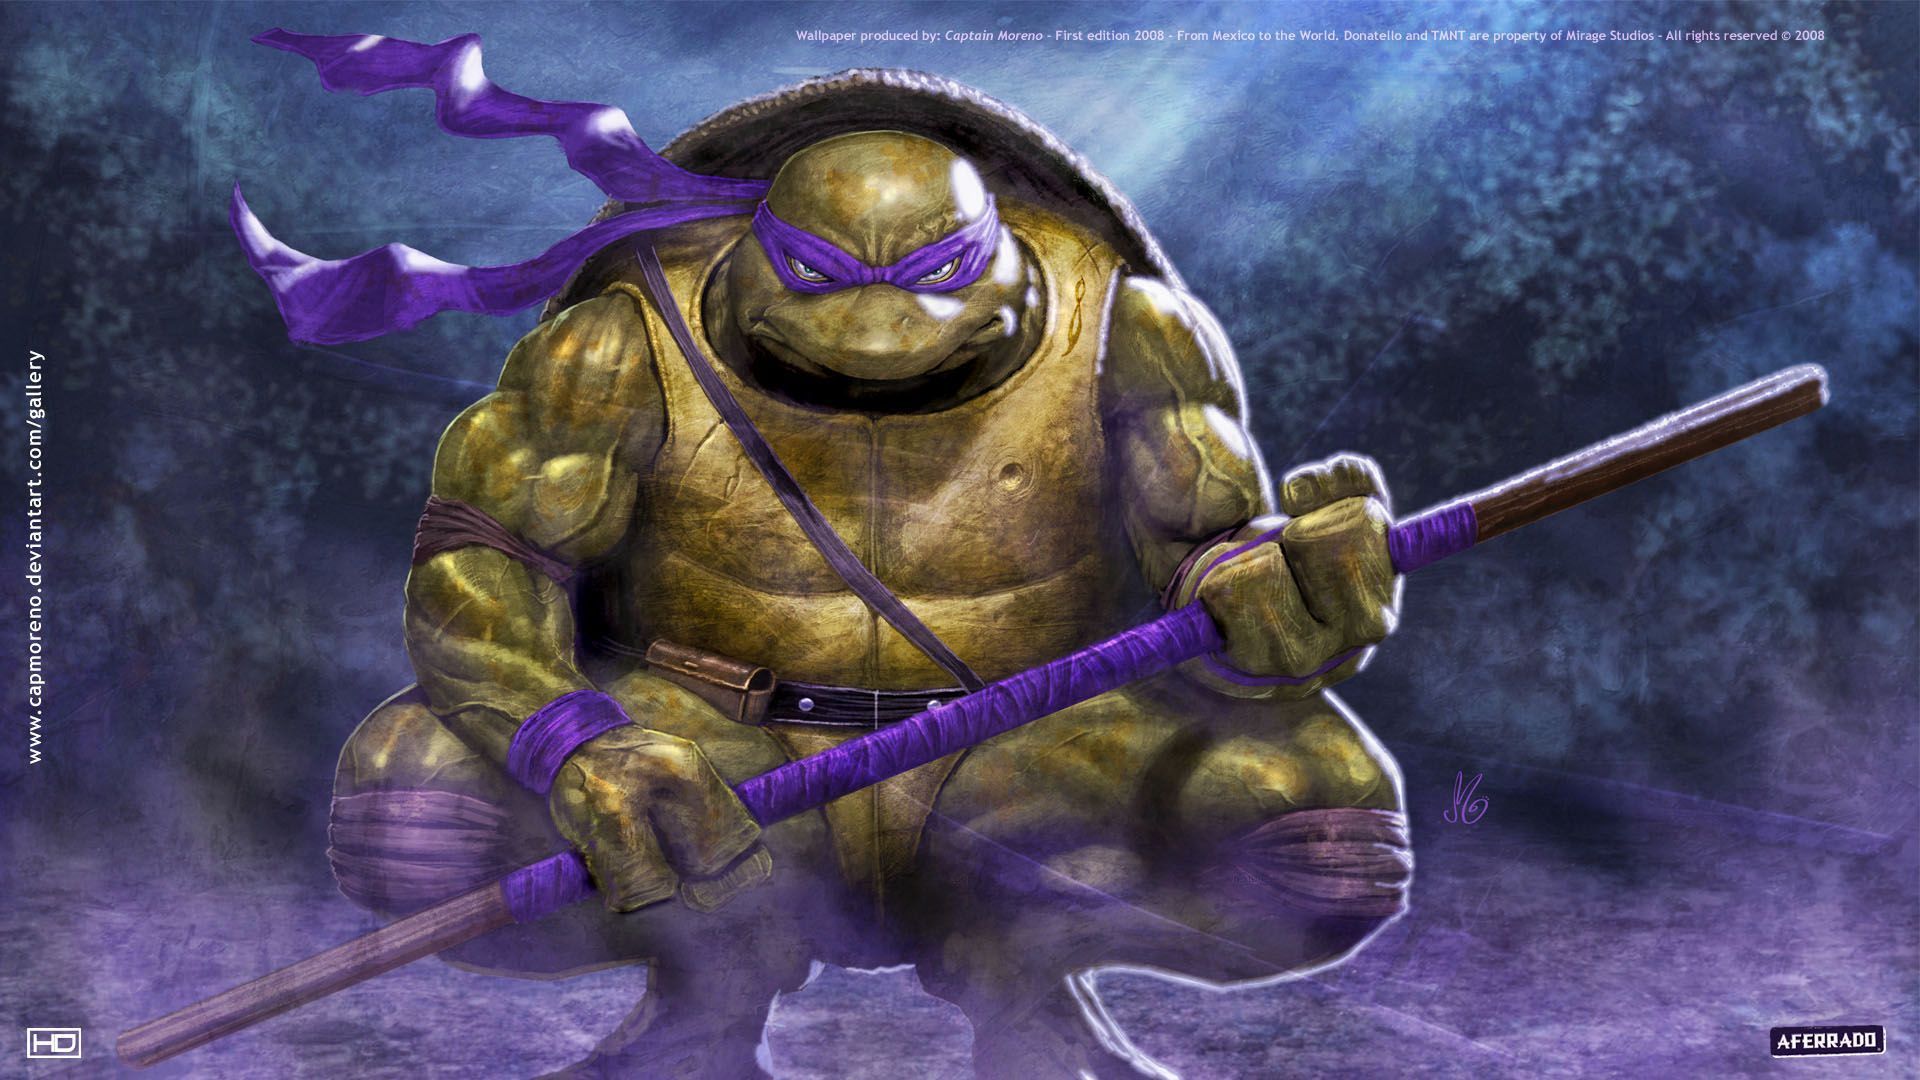 Donatello TMNT Wallpaper. Superhero Wallpaper. Teenage mutant ninja turtles artwork, Ninja turtles artwork, Tmnt